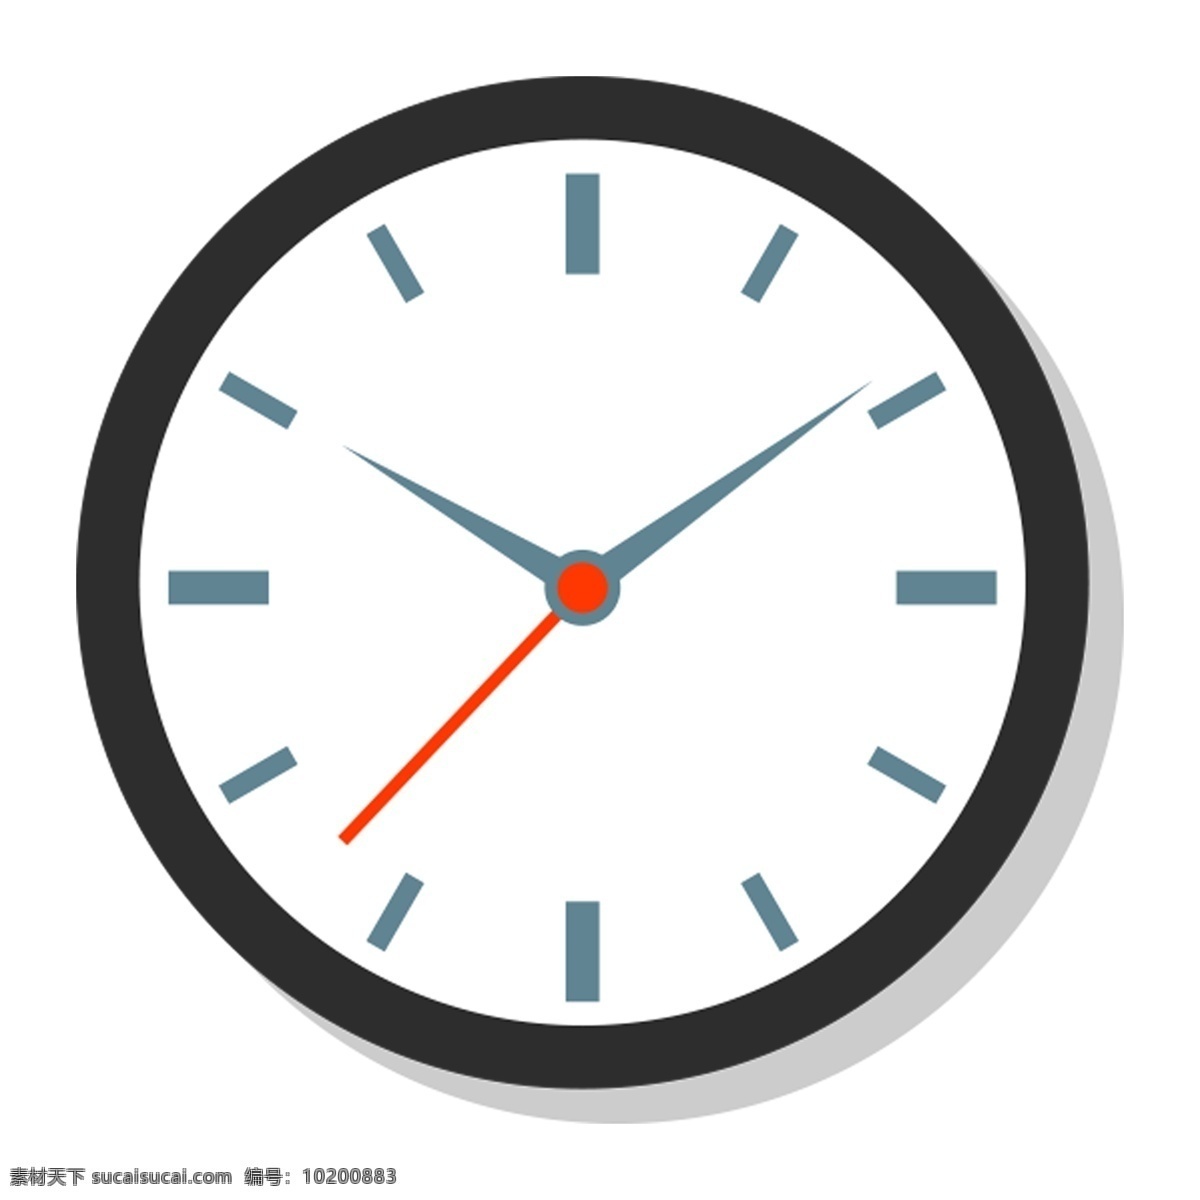 时钟图标 时钟手绘 钟图标 表图标 表手绘 钟表 web 界面设计 图标按钮